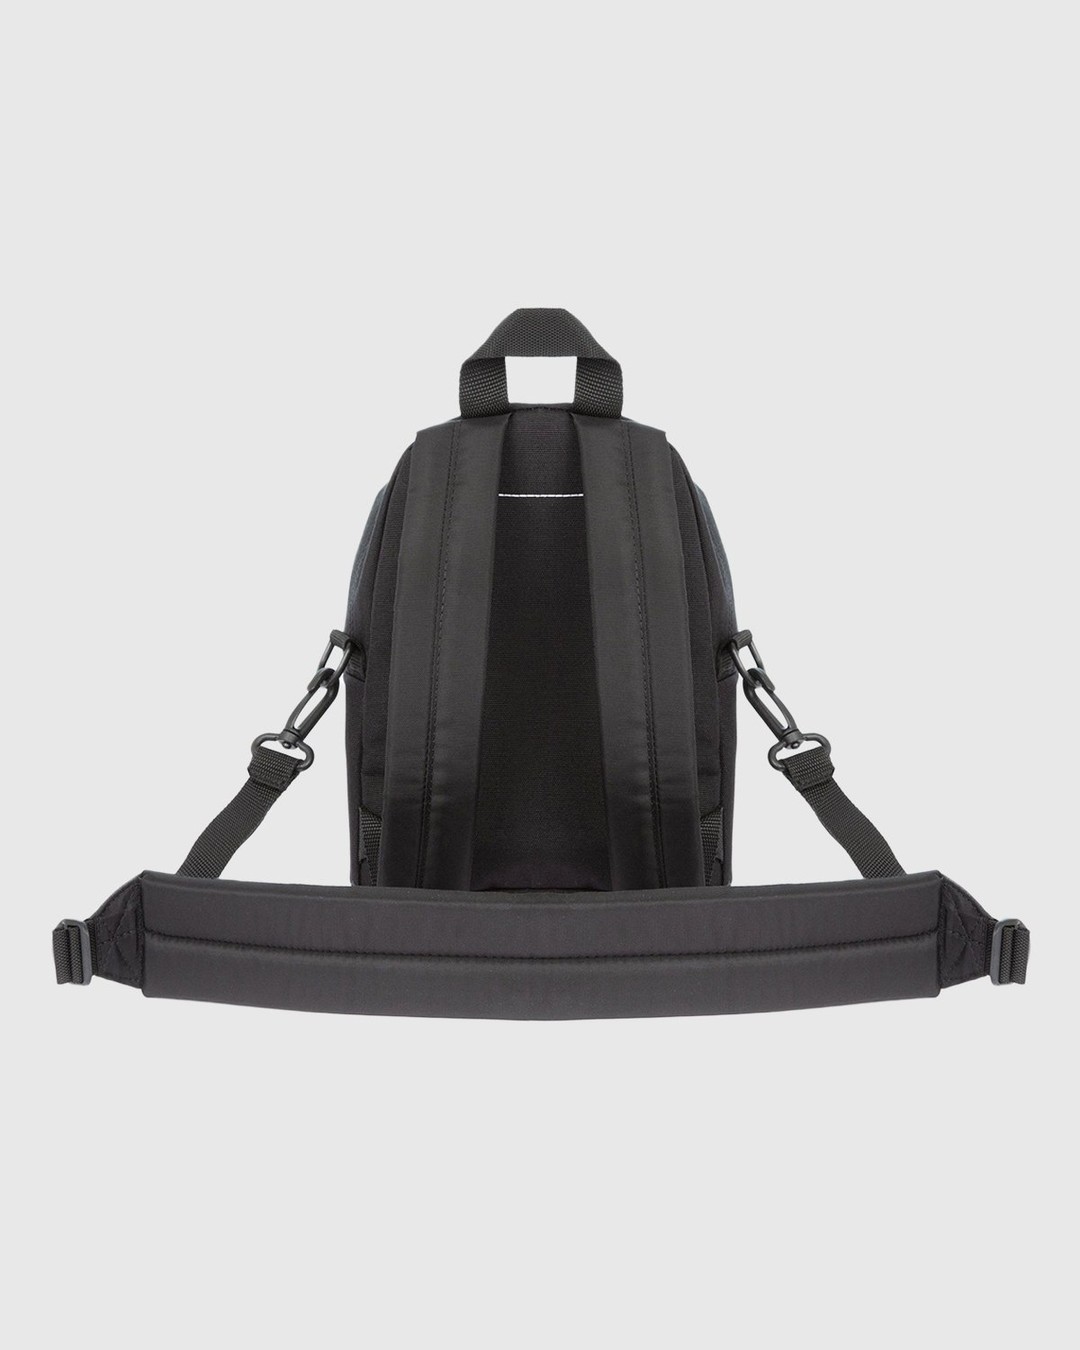 MM6 Maison Margiela x Eastpak – Shoulder Bag Black - Shoulder Bags - Black - Image 4